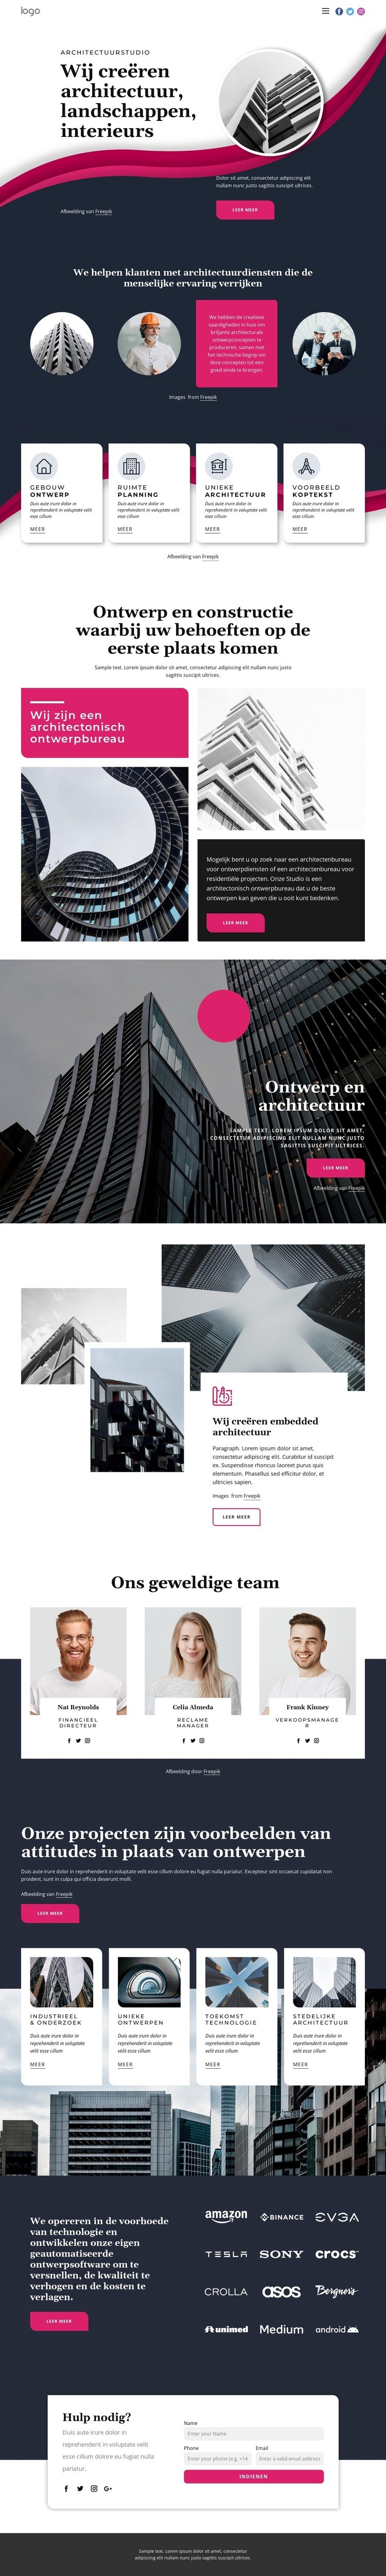 Wij creëren geweldige architectuur Website mockup